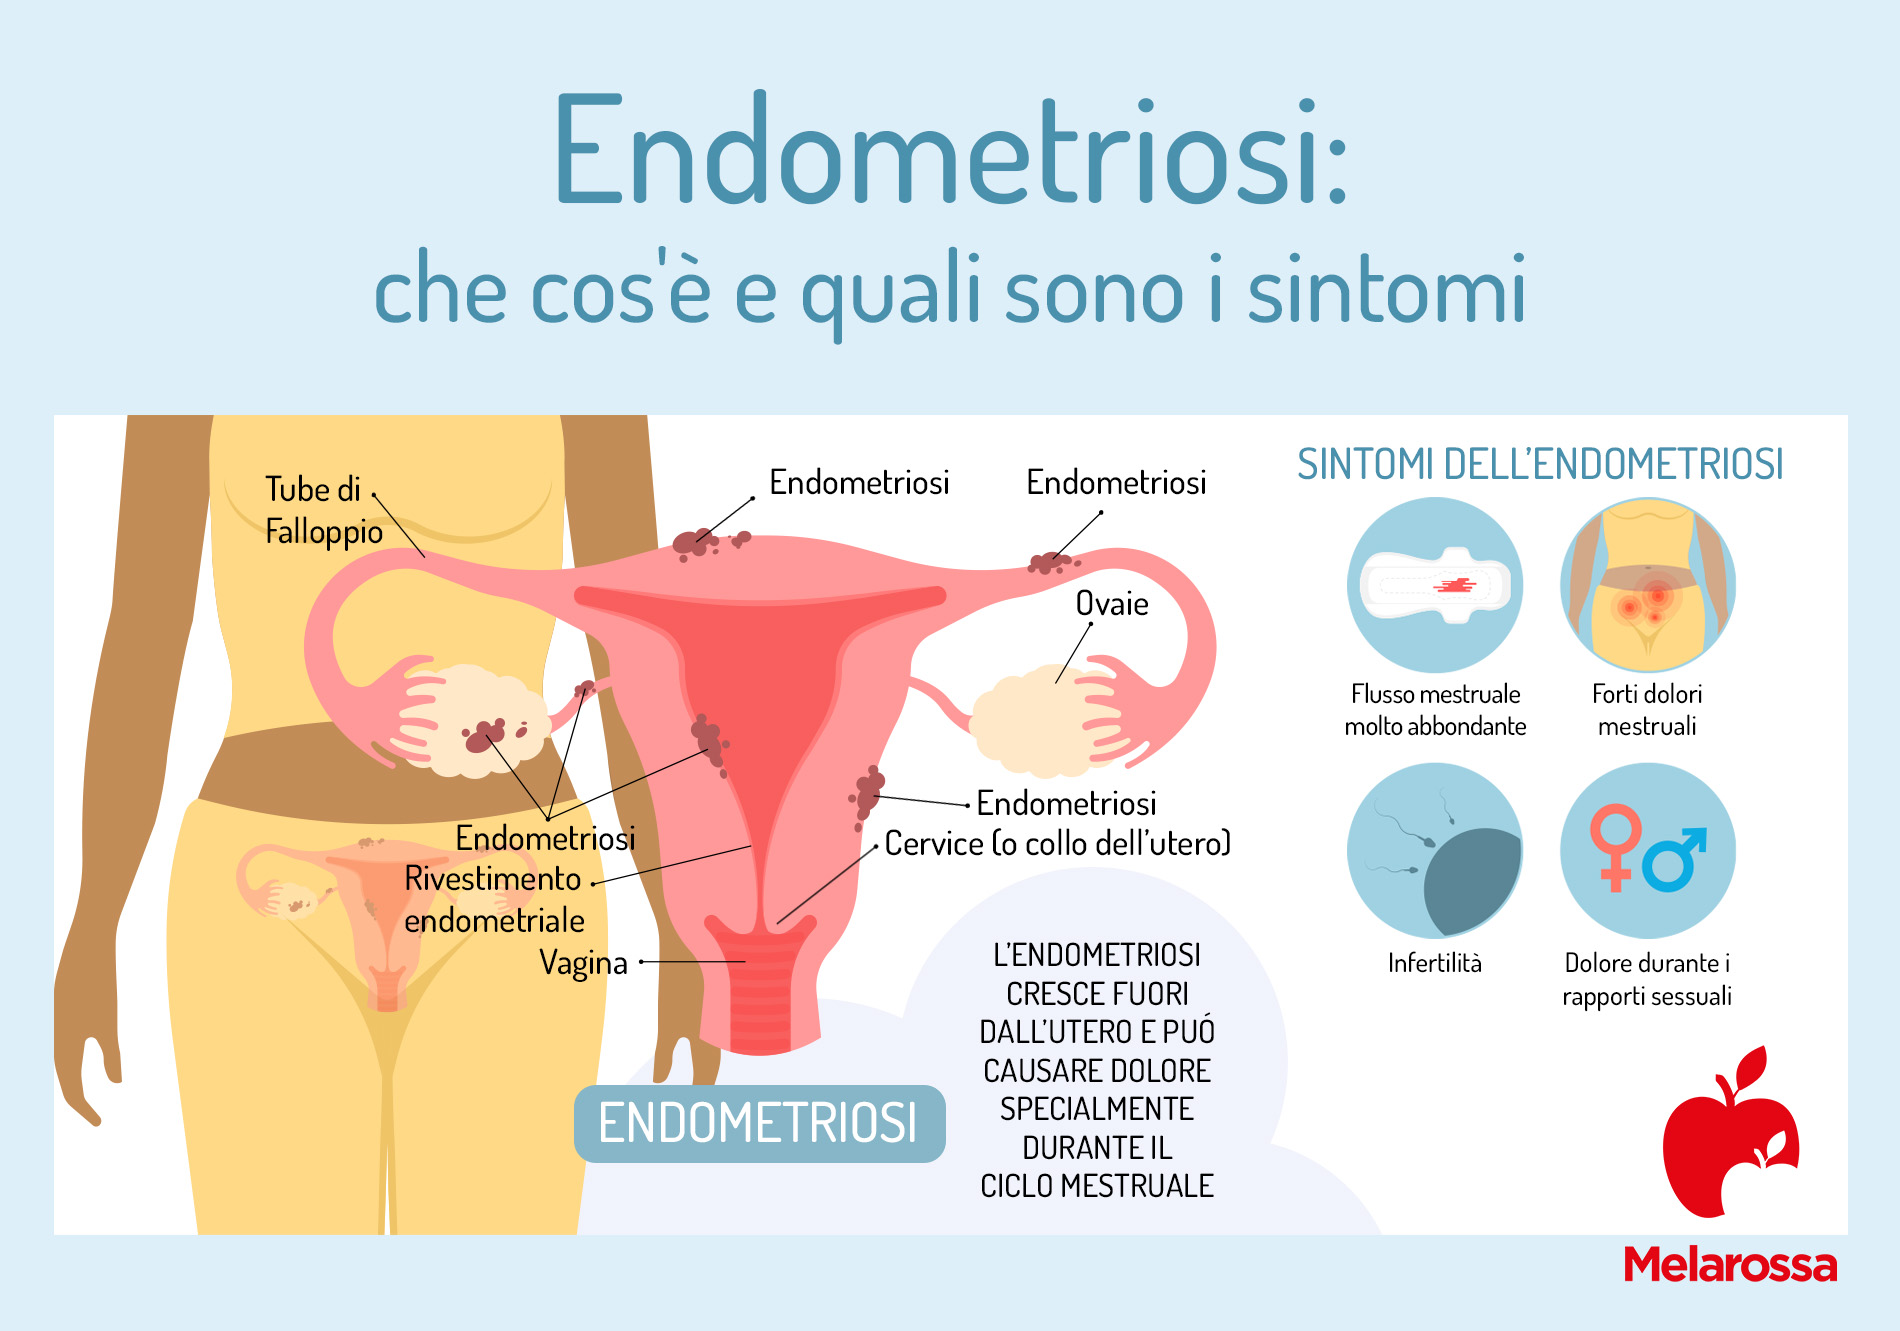 endometriosi: che cos'è e quali sono i sintomi